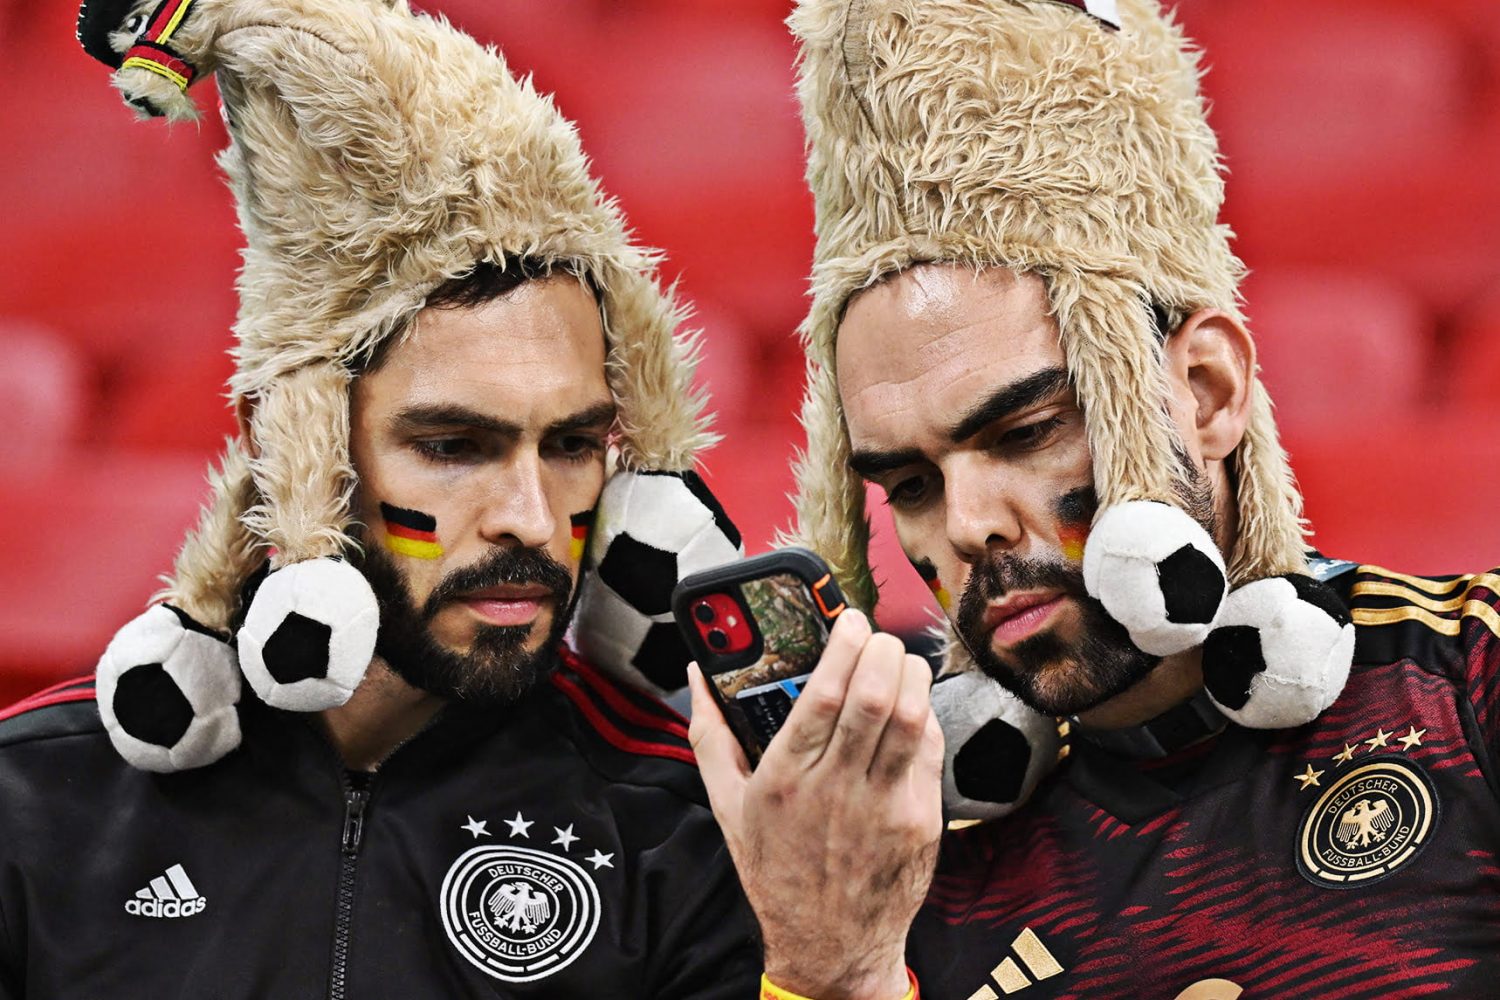 hinchas de Alemania tras eliminación del mundial